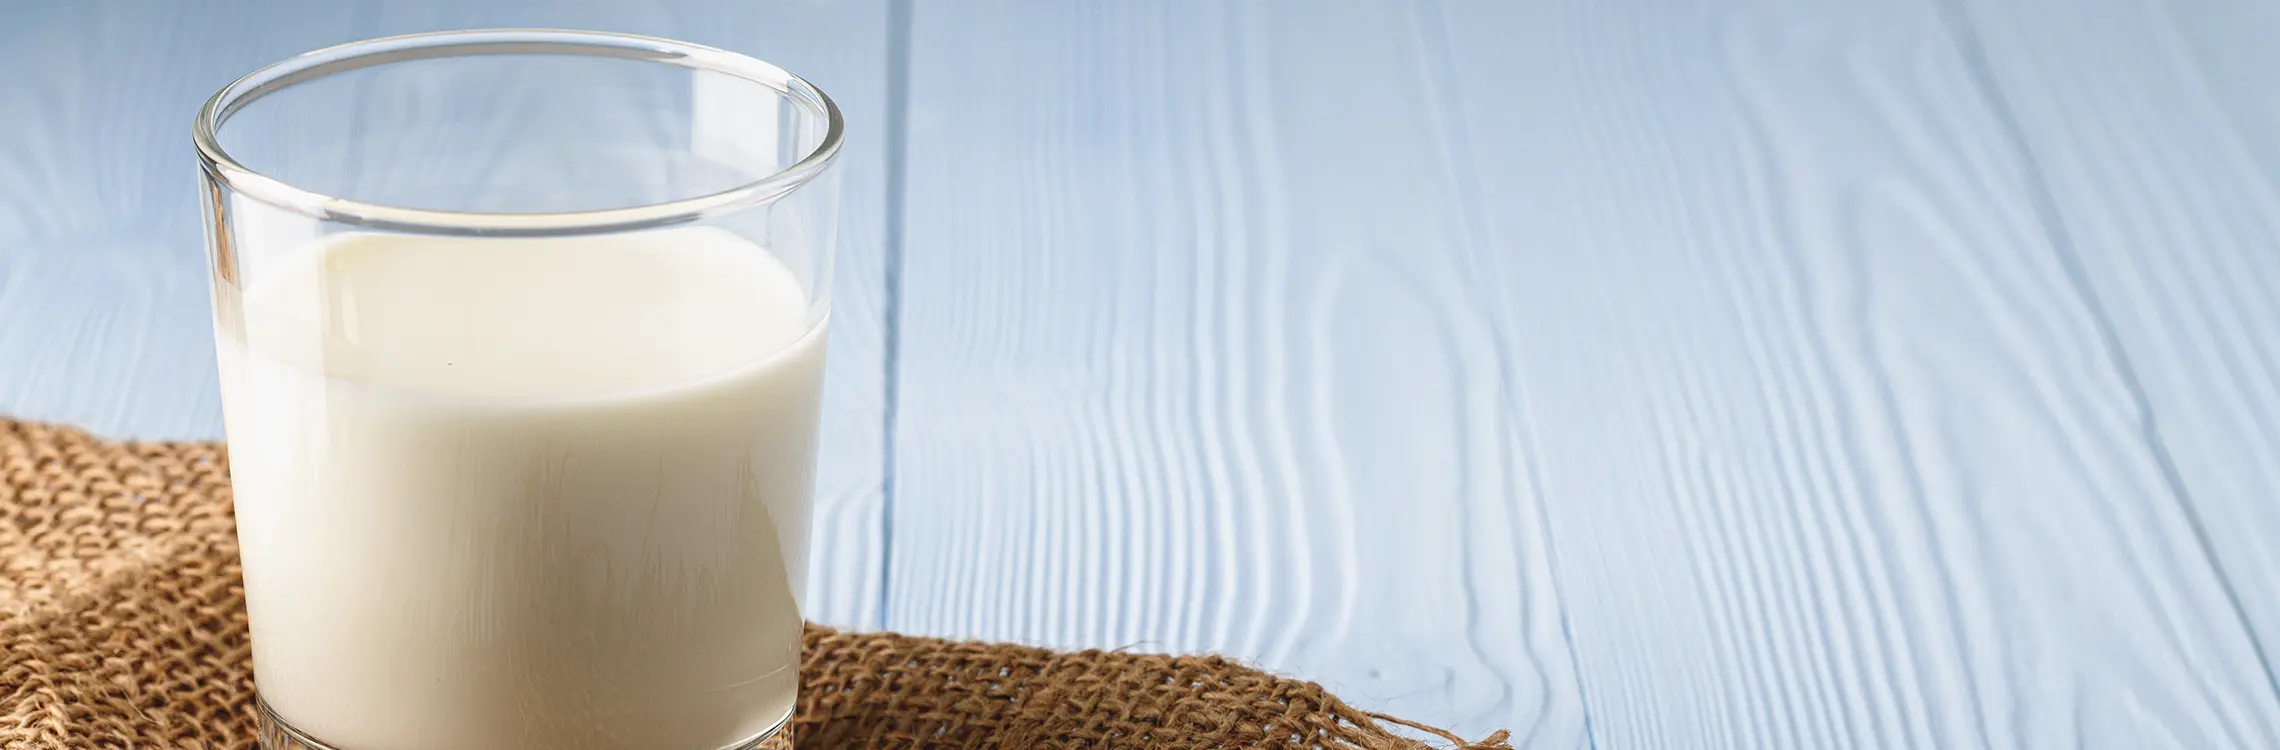 Ist Milch ungesund?